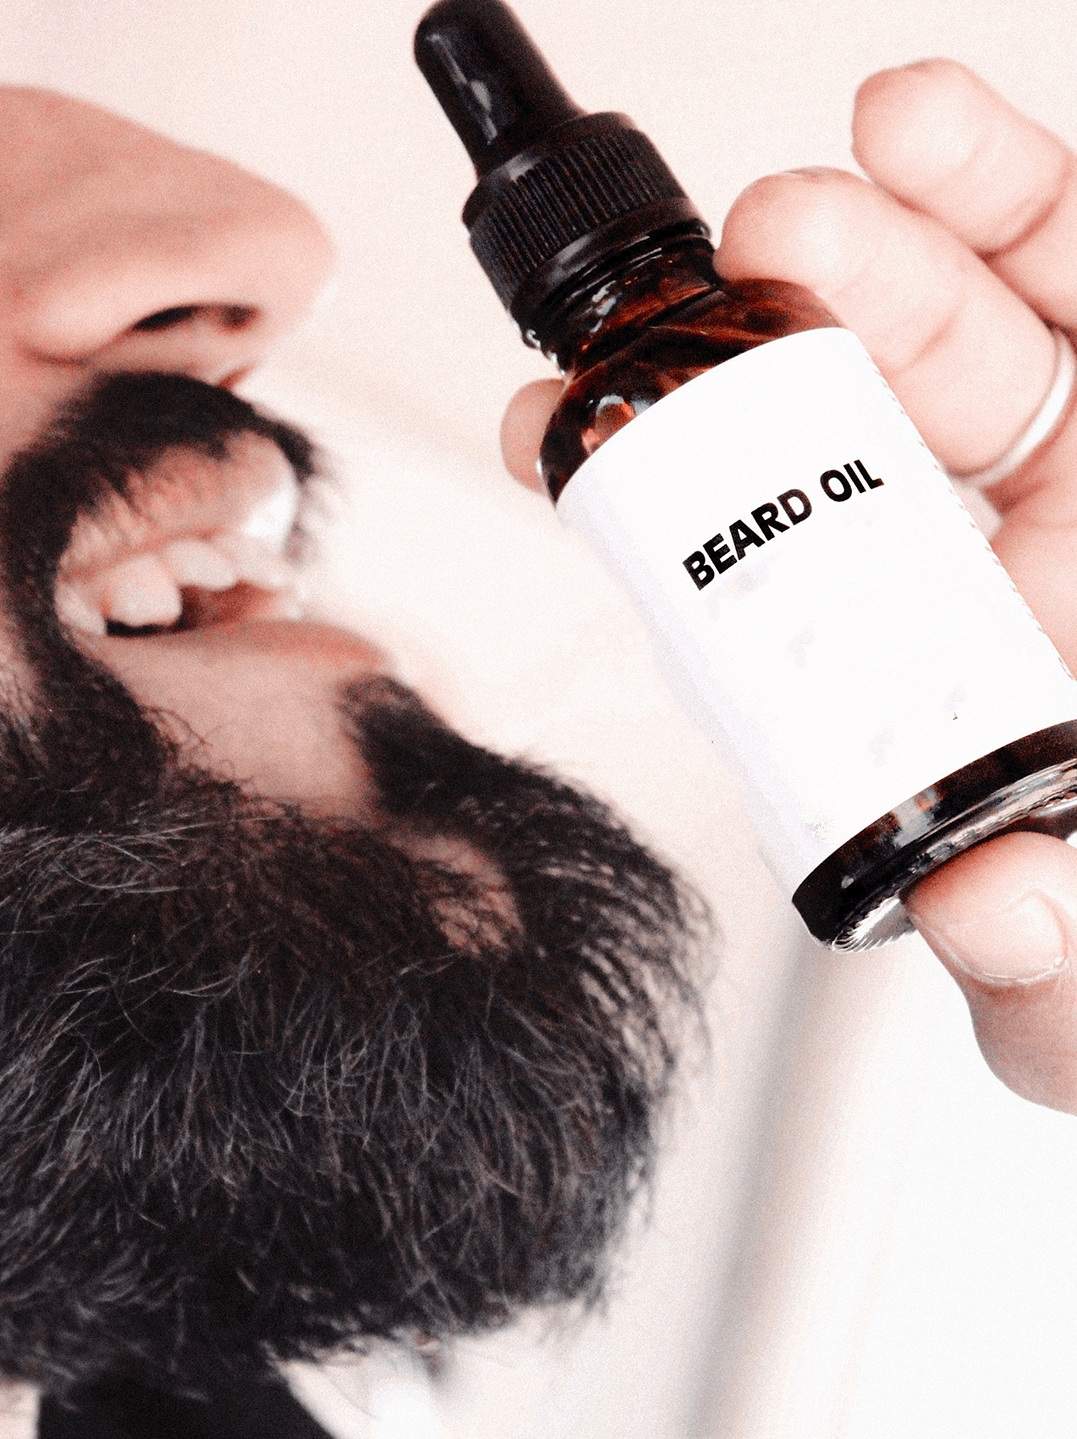 How to Make Homemade Beard Oil?